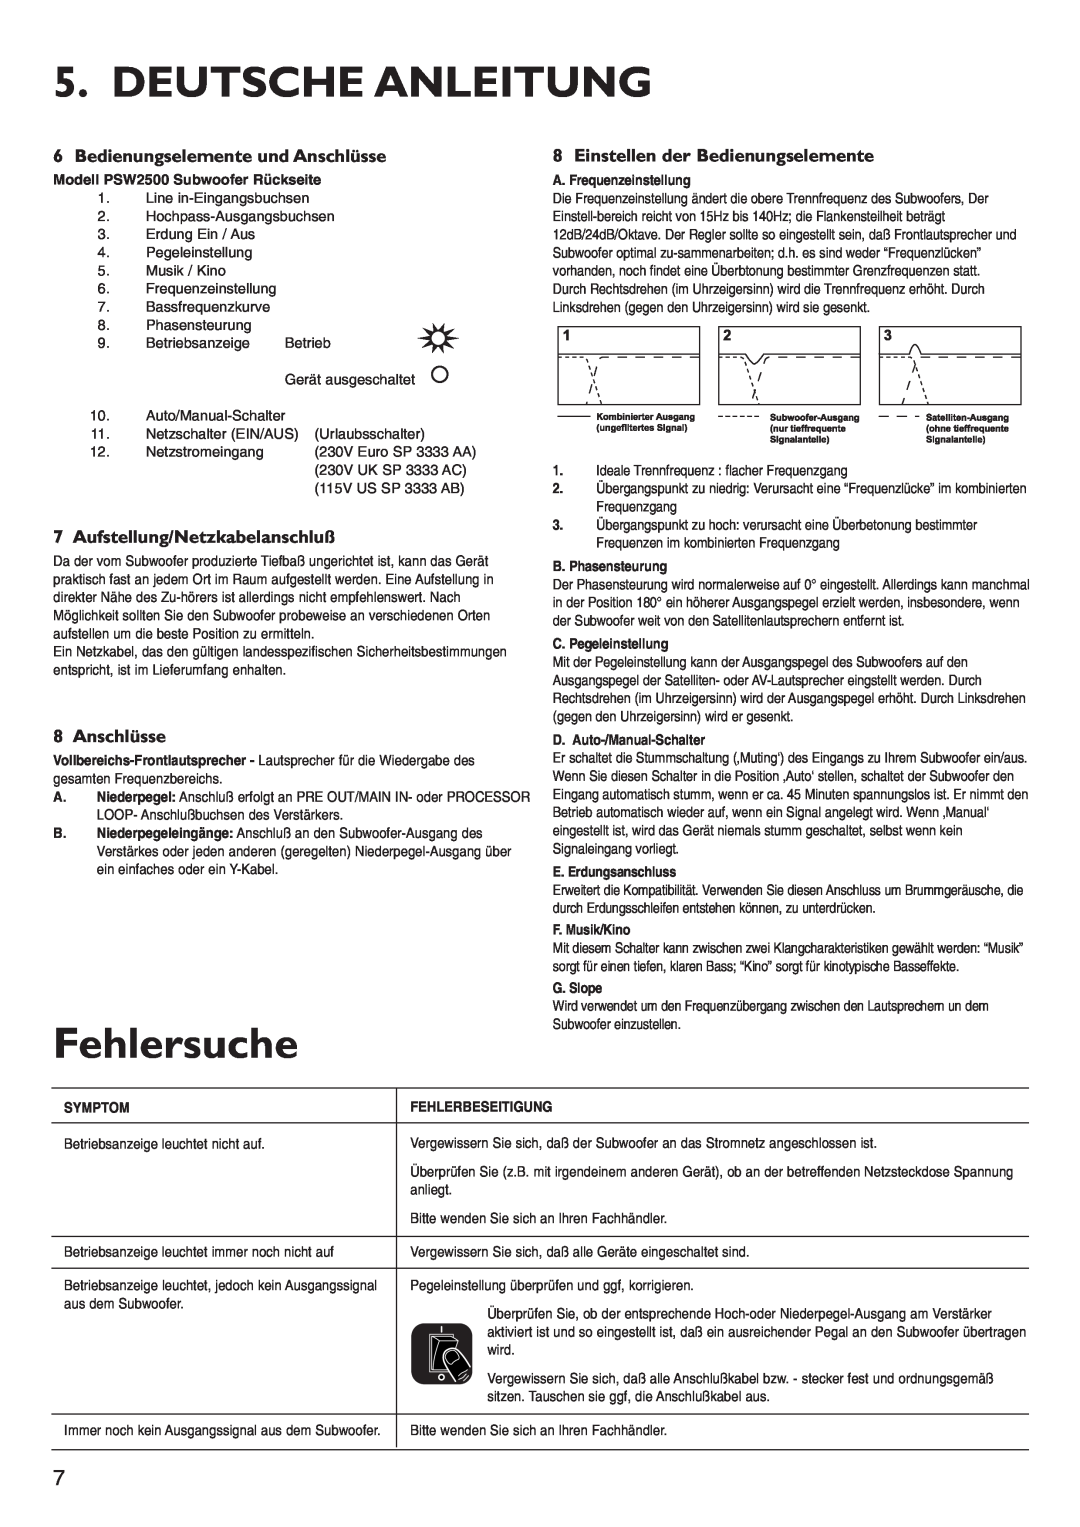 KEF Audio PSW2500 Deutsche Anleitung, Fehlersuche, Bedienungselemente und Anschlüsse, Aufstellung/Netzkabelanschluß 